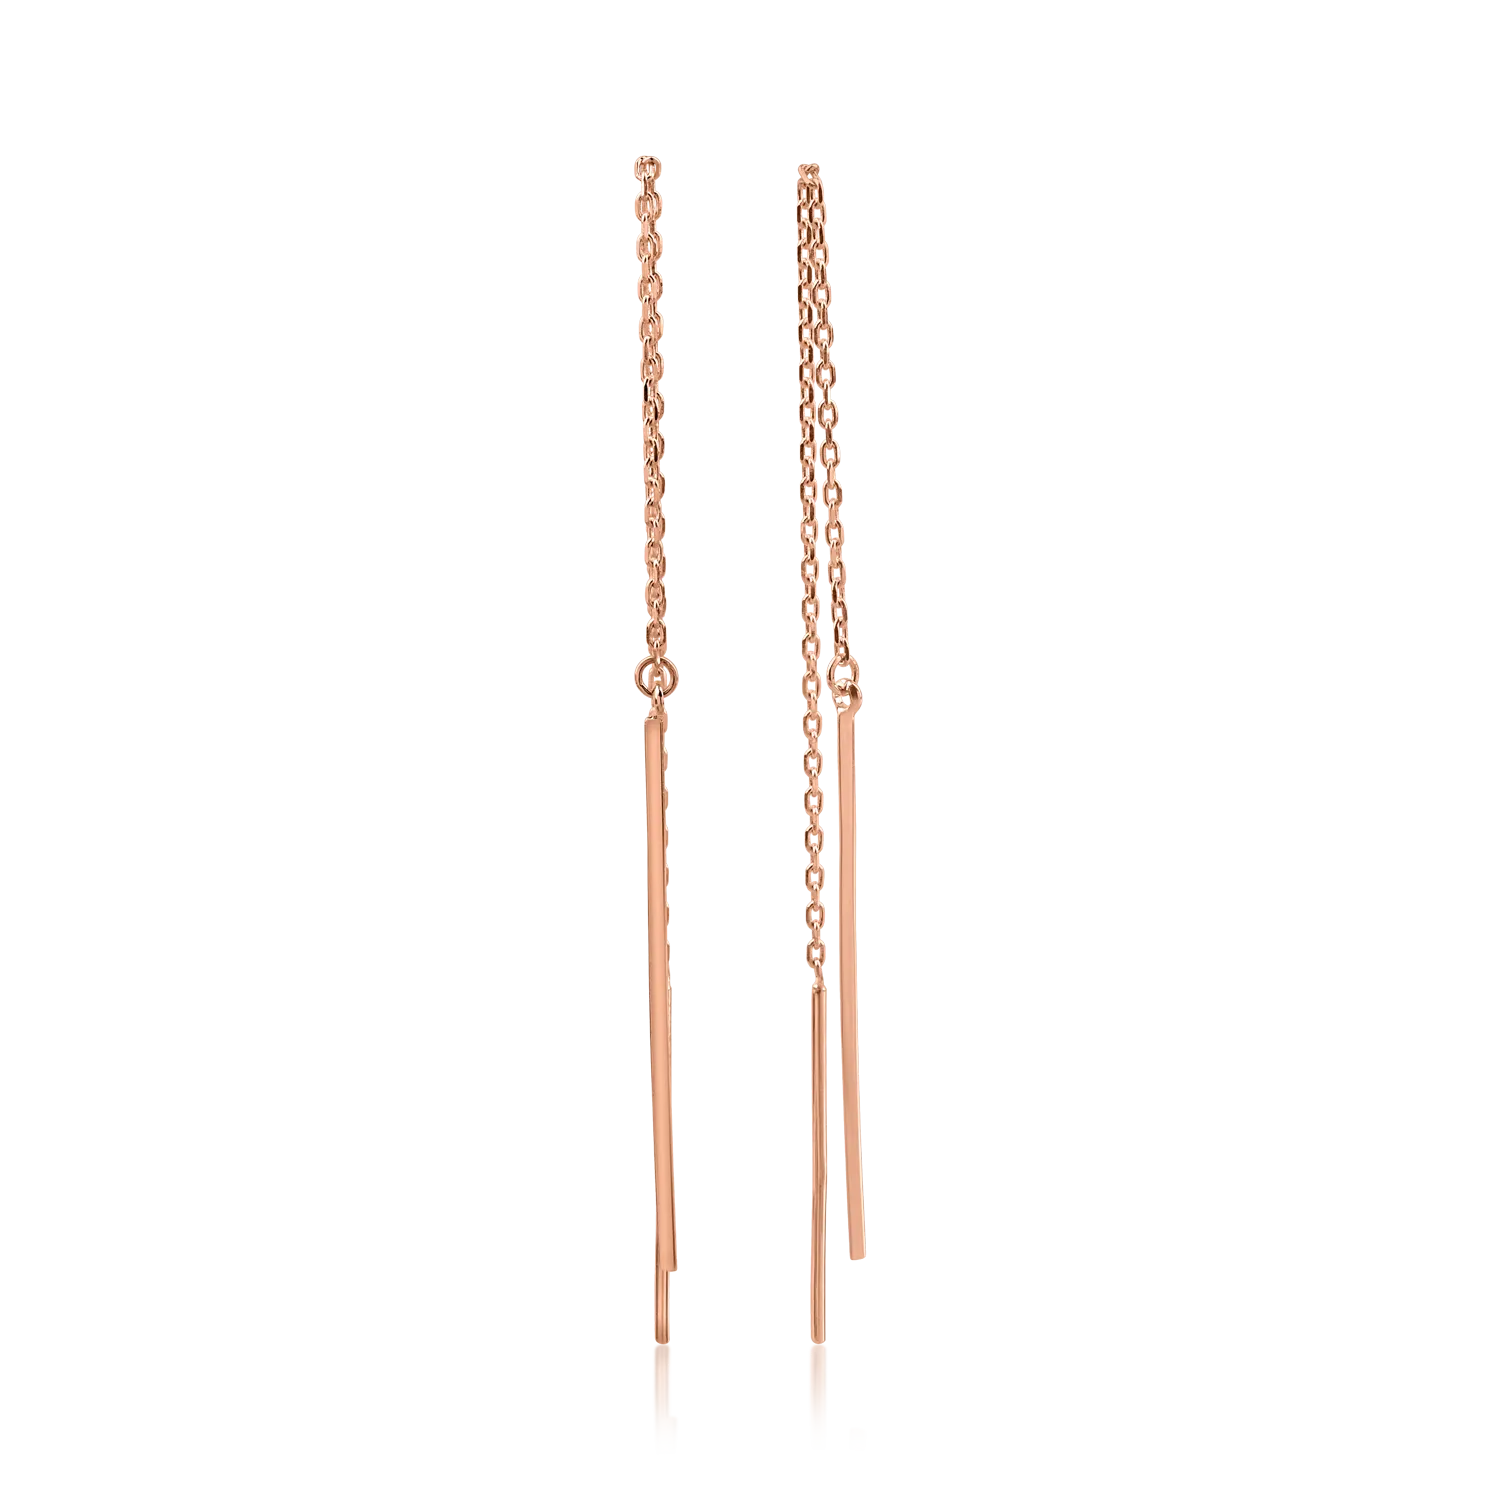 Długie kolczyki w kolorze różowego złota